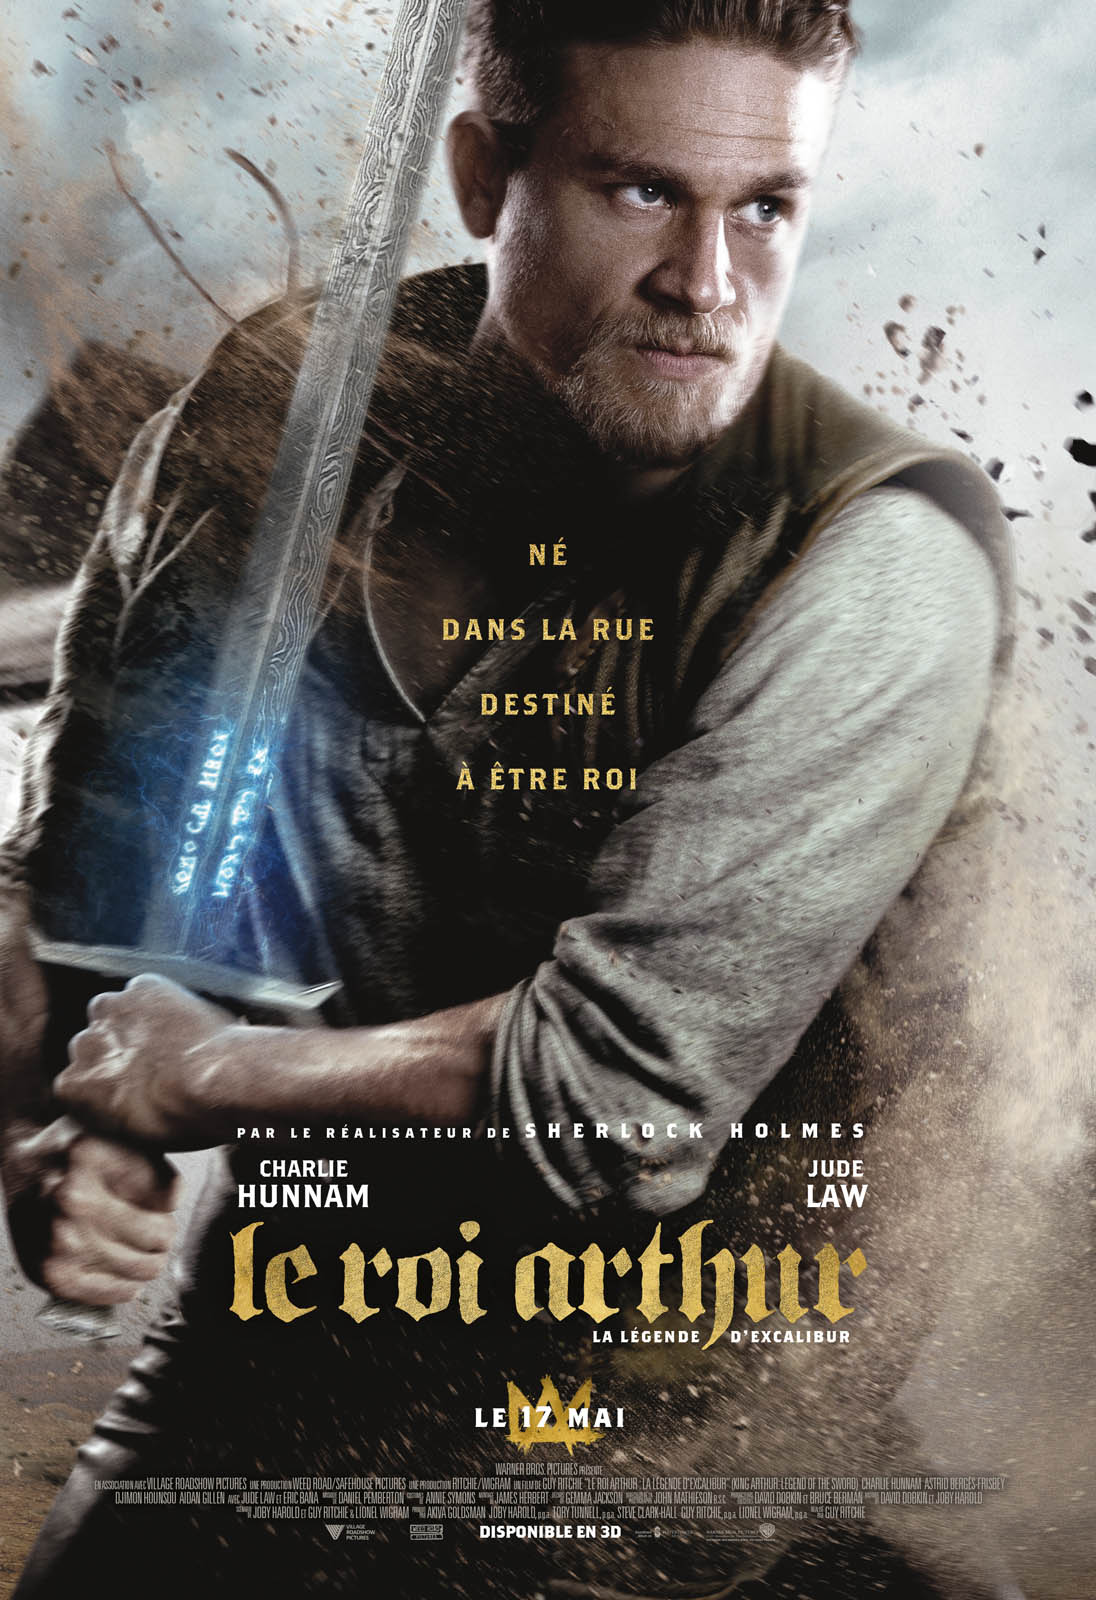 Le Roi Arthur: La Légende d’Excalibur